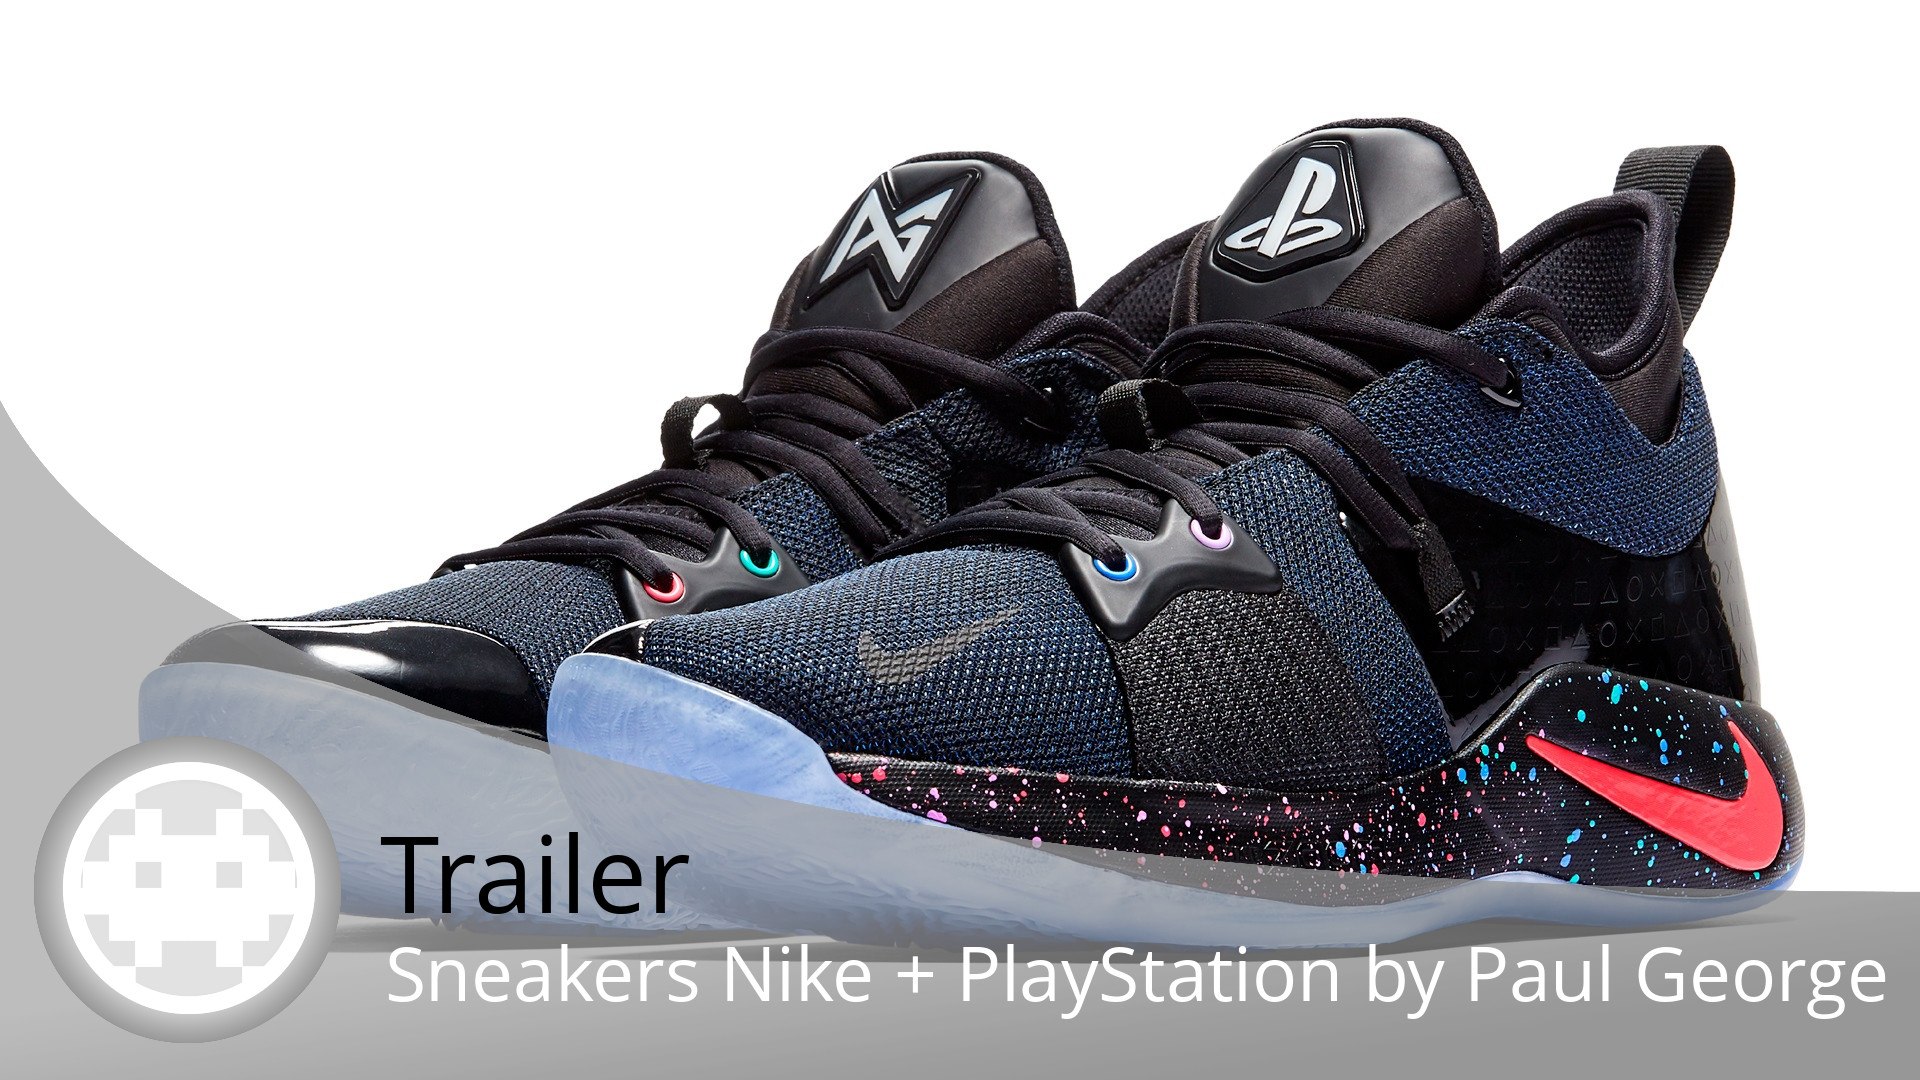 Trailer - Sneakers Nike + PlayStation - Des baskets originales aux couleurs  de la console de Sony ! - Vidéo Dailymotion